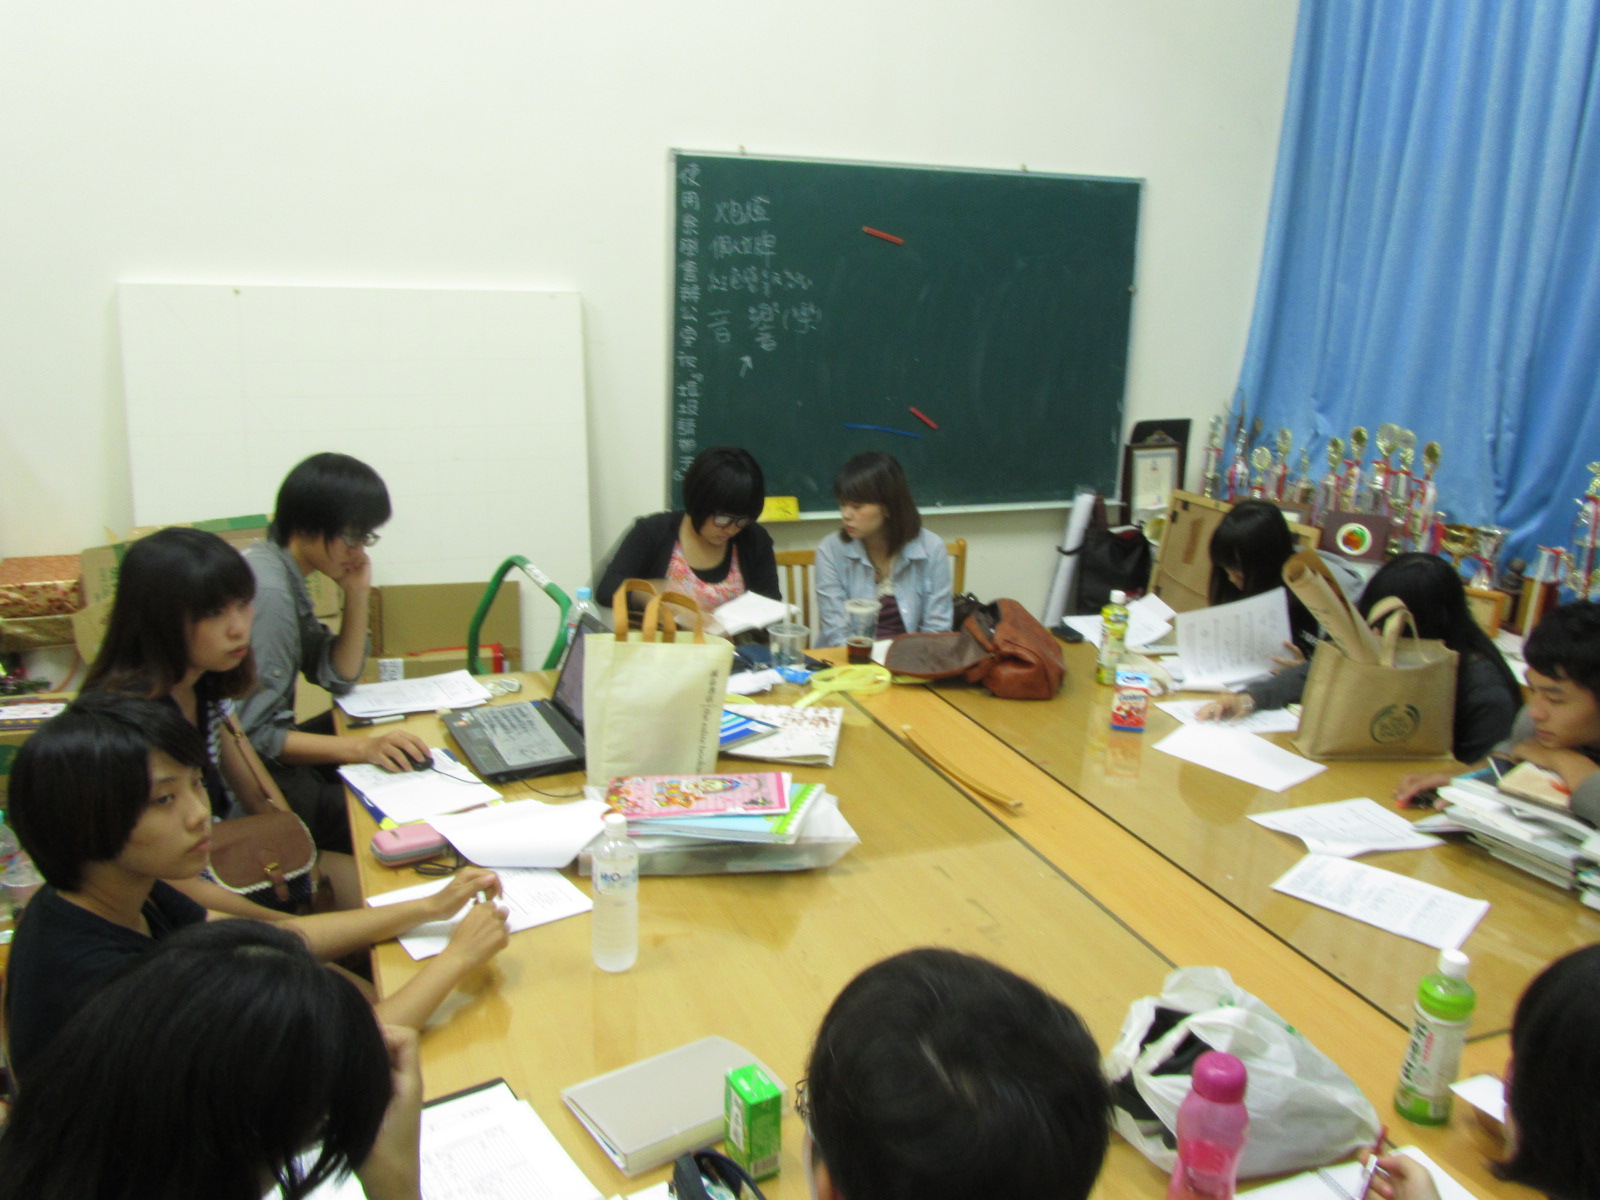 2011-09-18  系學會開會 - 審預算